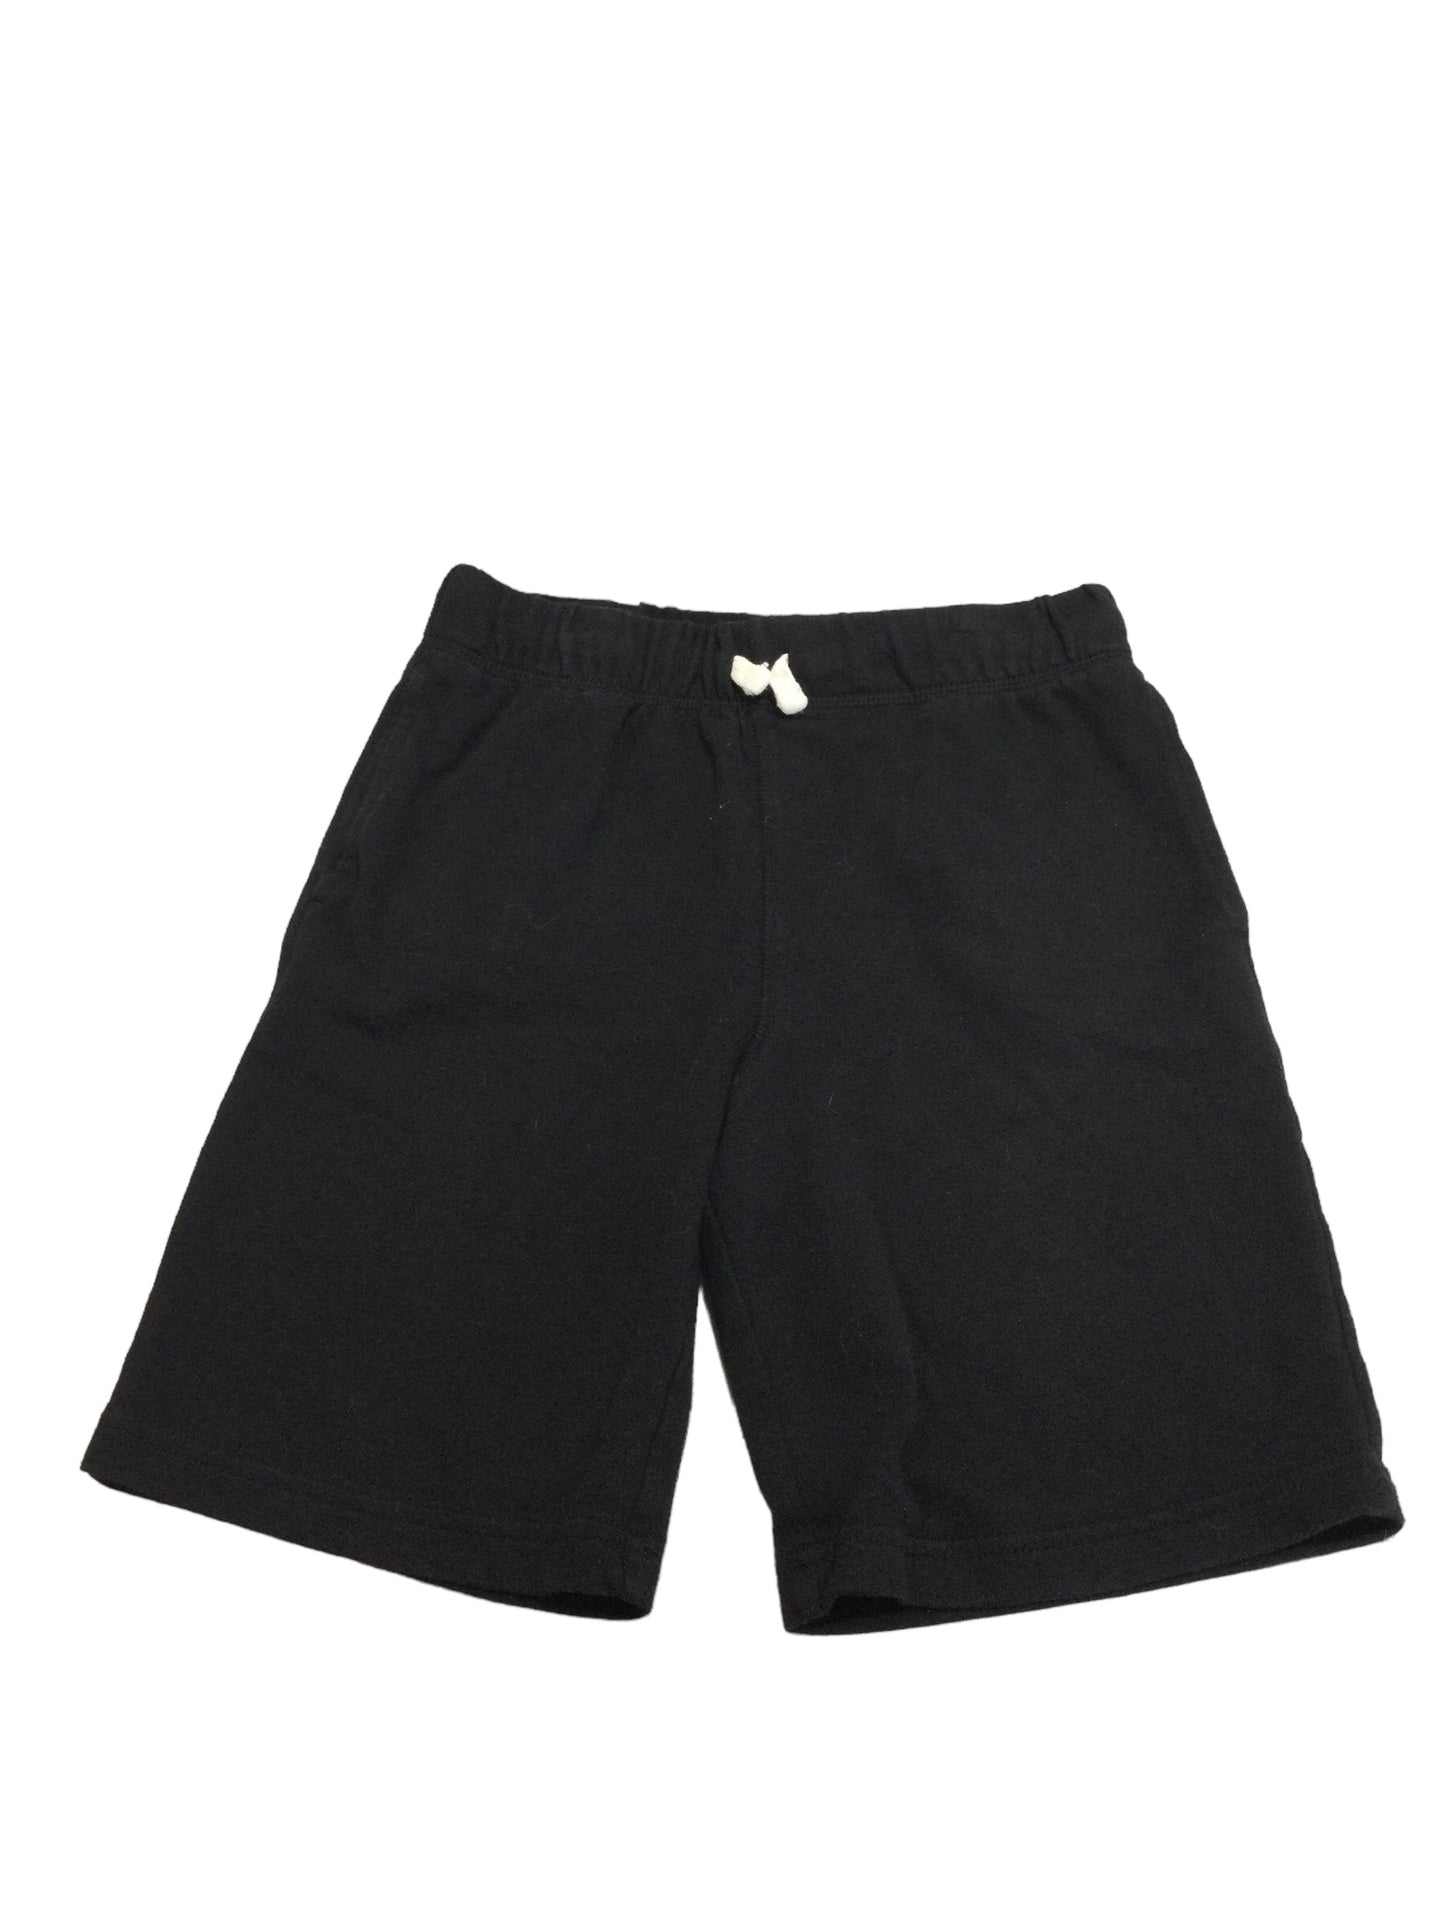 Cotton Shorts, size 10/12